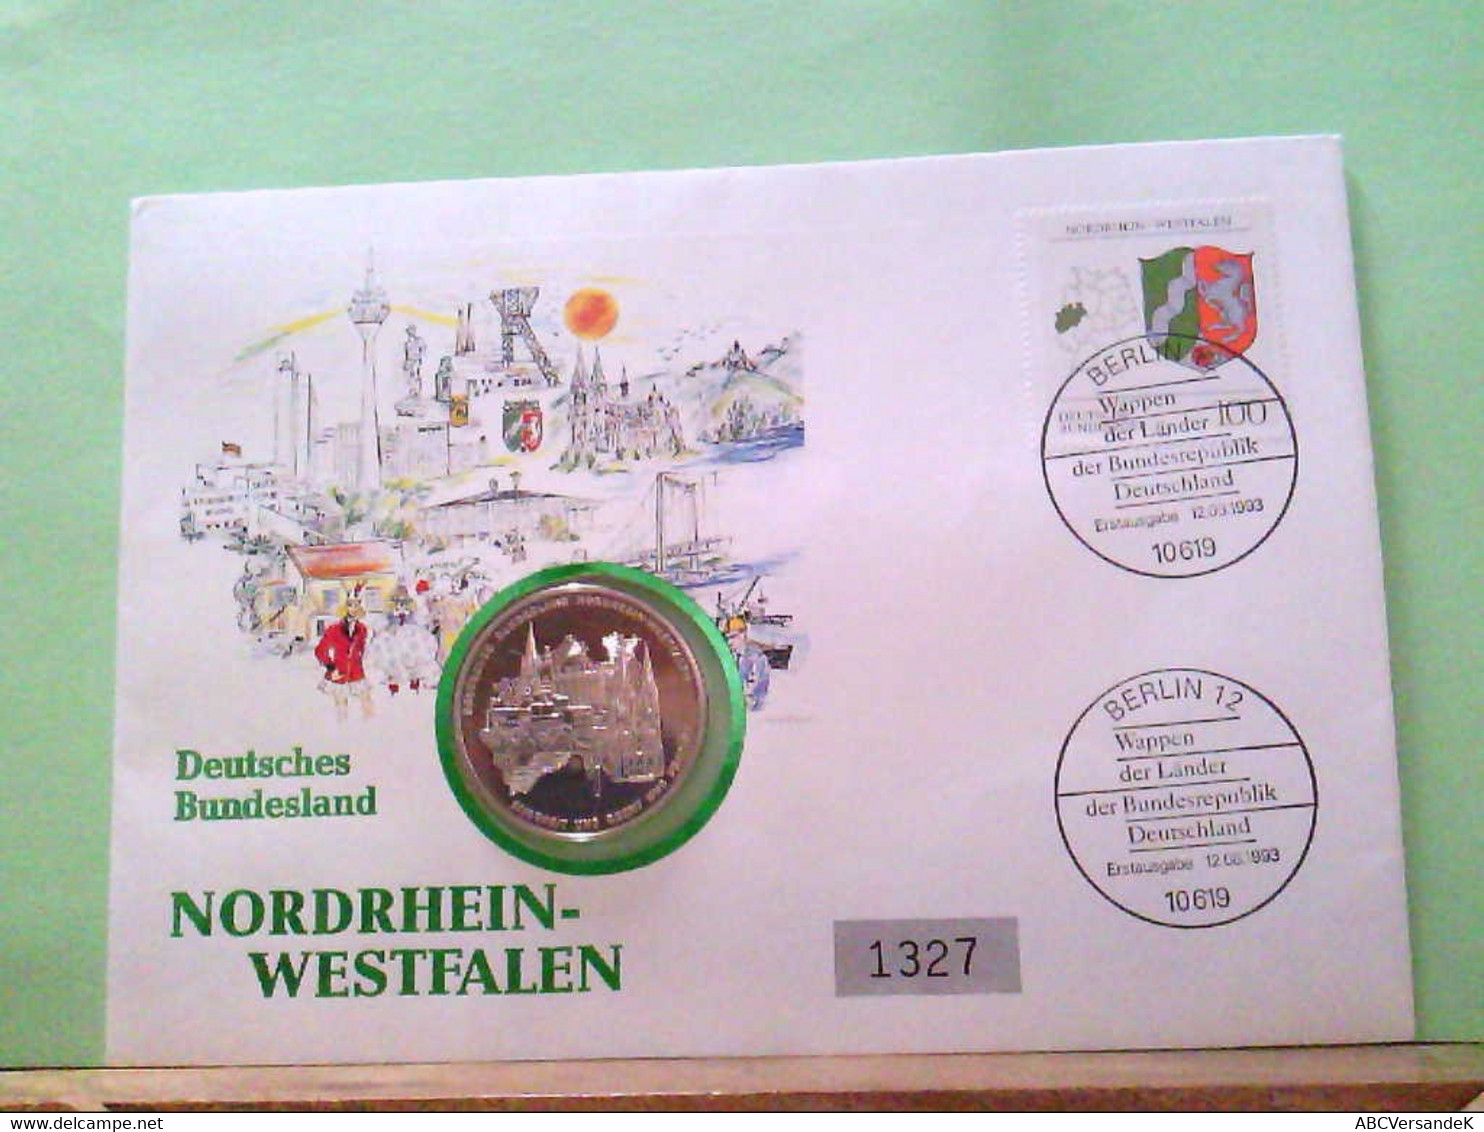 Numisbrief 1993, Deutsches Bundesland Nordrhein - Westfalen, Medaille: Wappen Der Bundesländer. - Numismatics